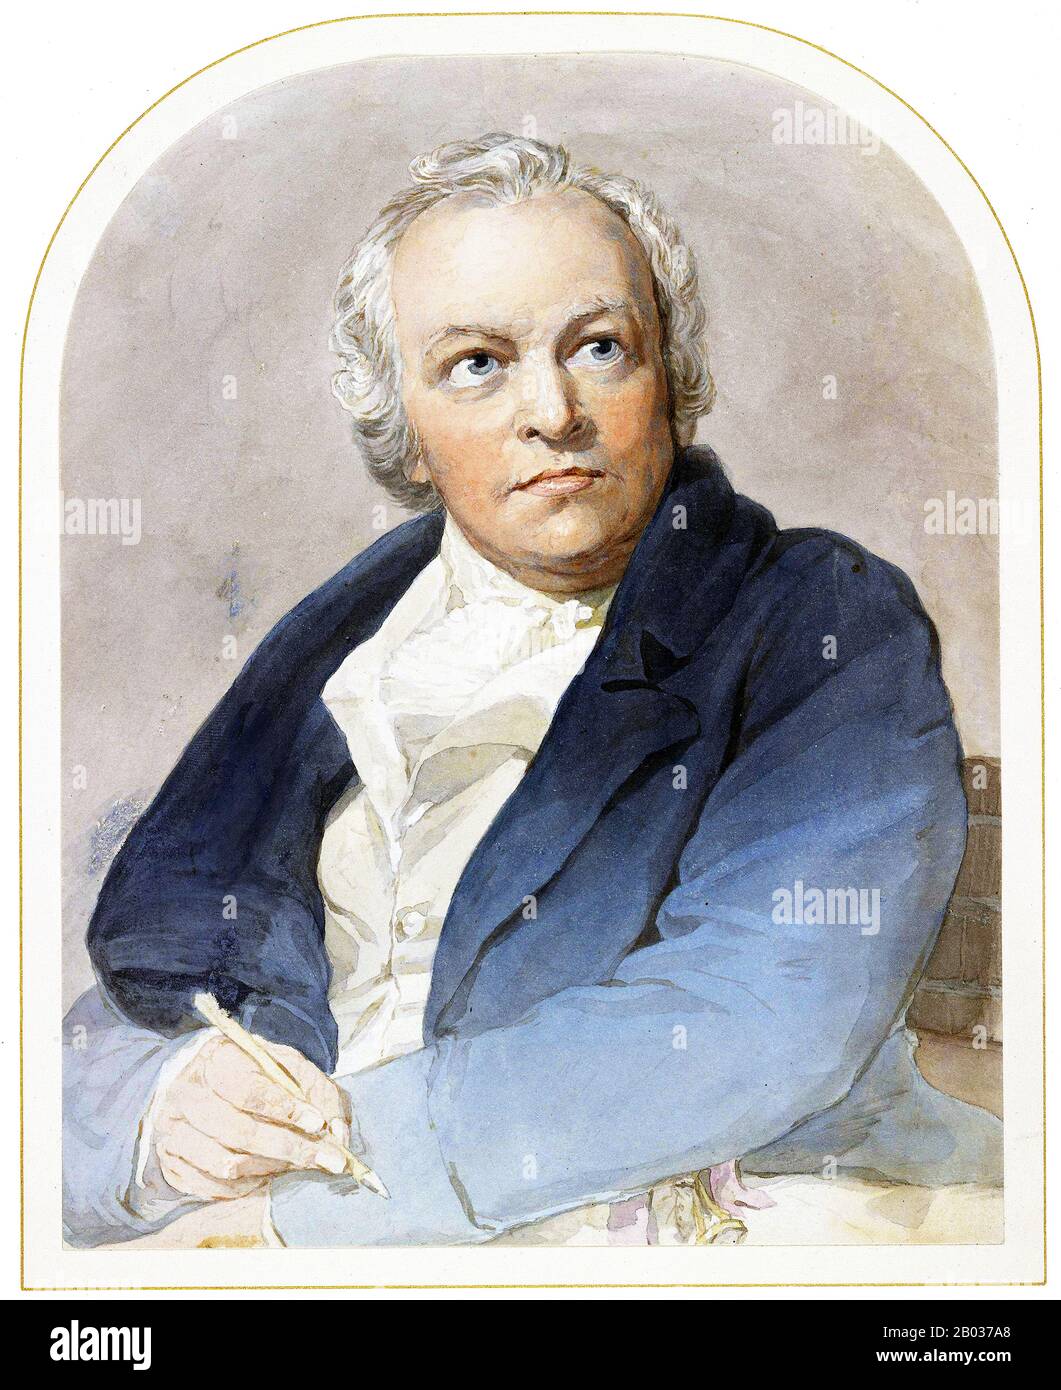 William Blake (28. November 1757 - 12. August 1827) war ein englischer Dichter, Maler und Druckerhersteller. Zu seinen Lebenszeit weitgehend unerkannt, gilt Blake heute als eine wegweisende Figur in der Geschichte der Poesie und visuellen Kunst des Romantischen Zeitalters. Seine prophetischen Werke sollen "das, was im Verhältnis zu seinen Verdiensten steht, den am wenigsten gelesenen Gedichtkörper in der englischen Sprache" bilden. Seine visuelle Kunst führte dazu, dass ein zeitgenössischer Kunstkritiker ihn "weit und entfernt den größten Künstler, den Großbritannien jemals produziert hat" verkünden konnte. Stockfoto